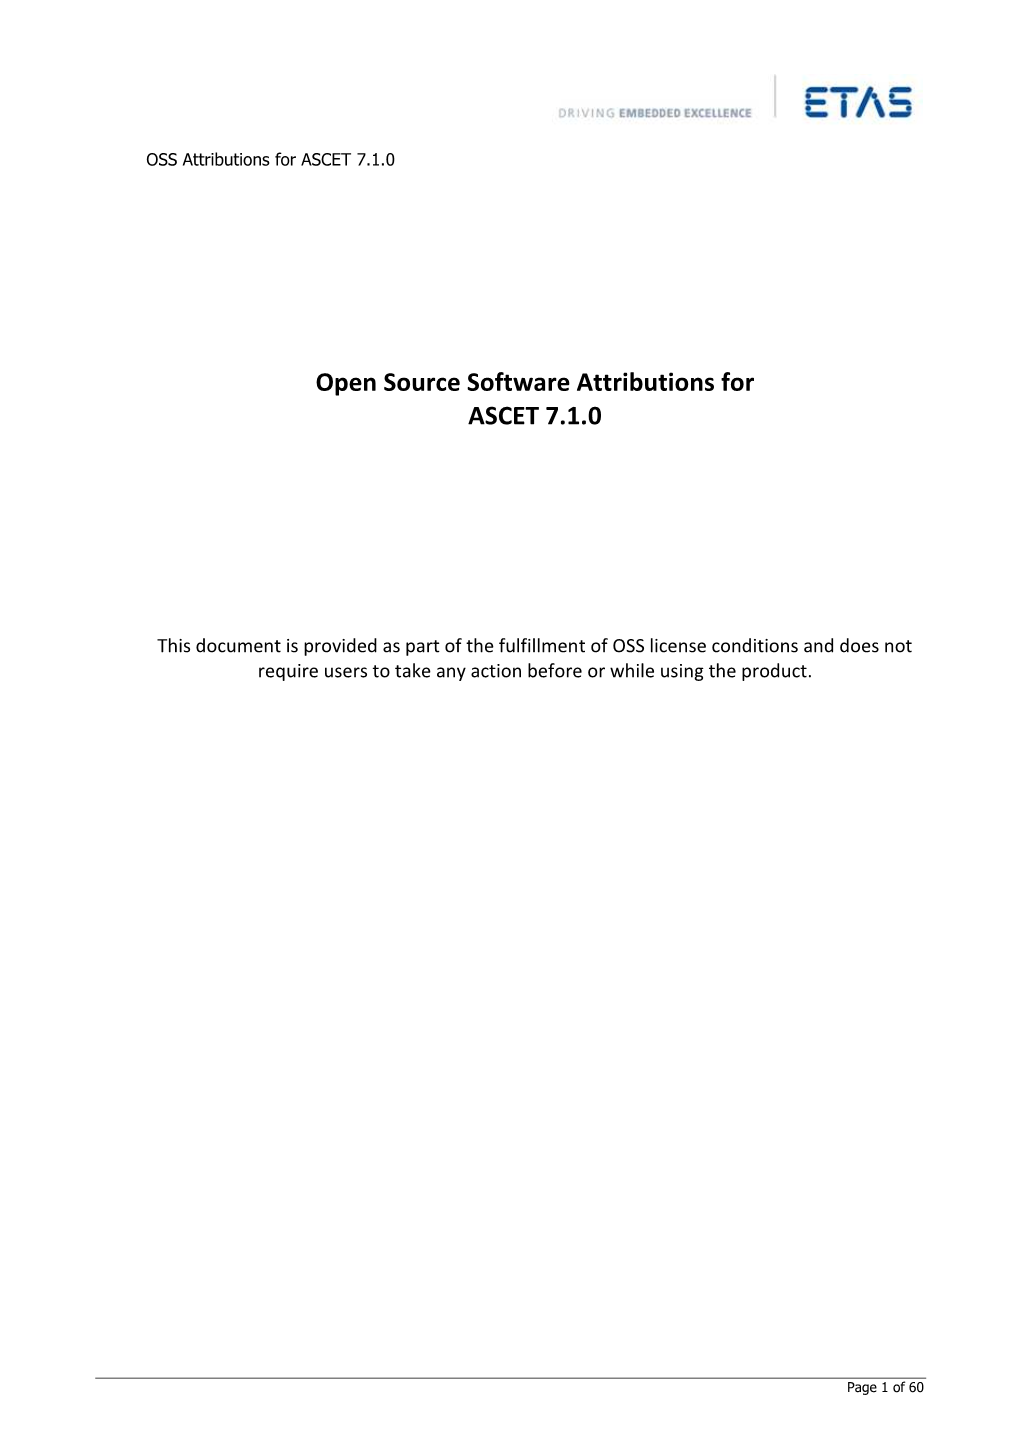 ASCET V7.1 Open Source Software Attributions EN